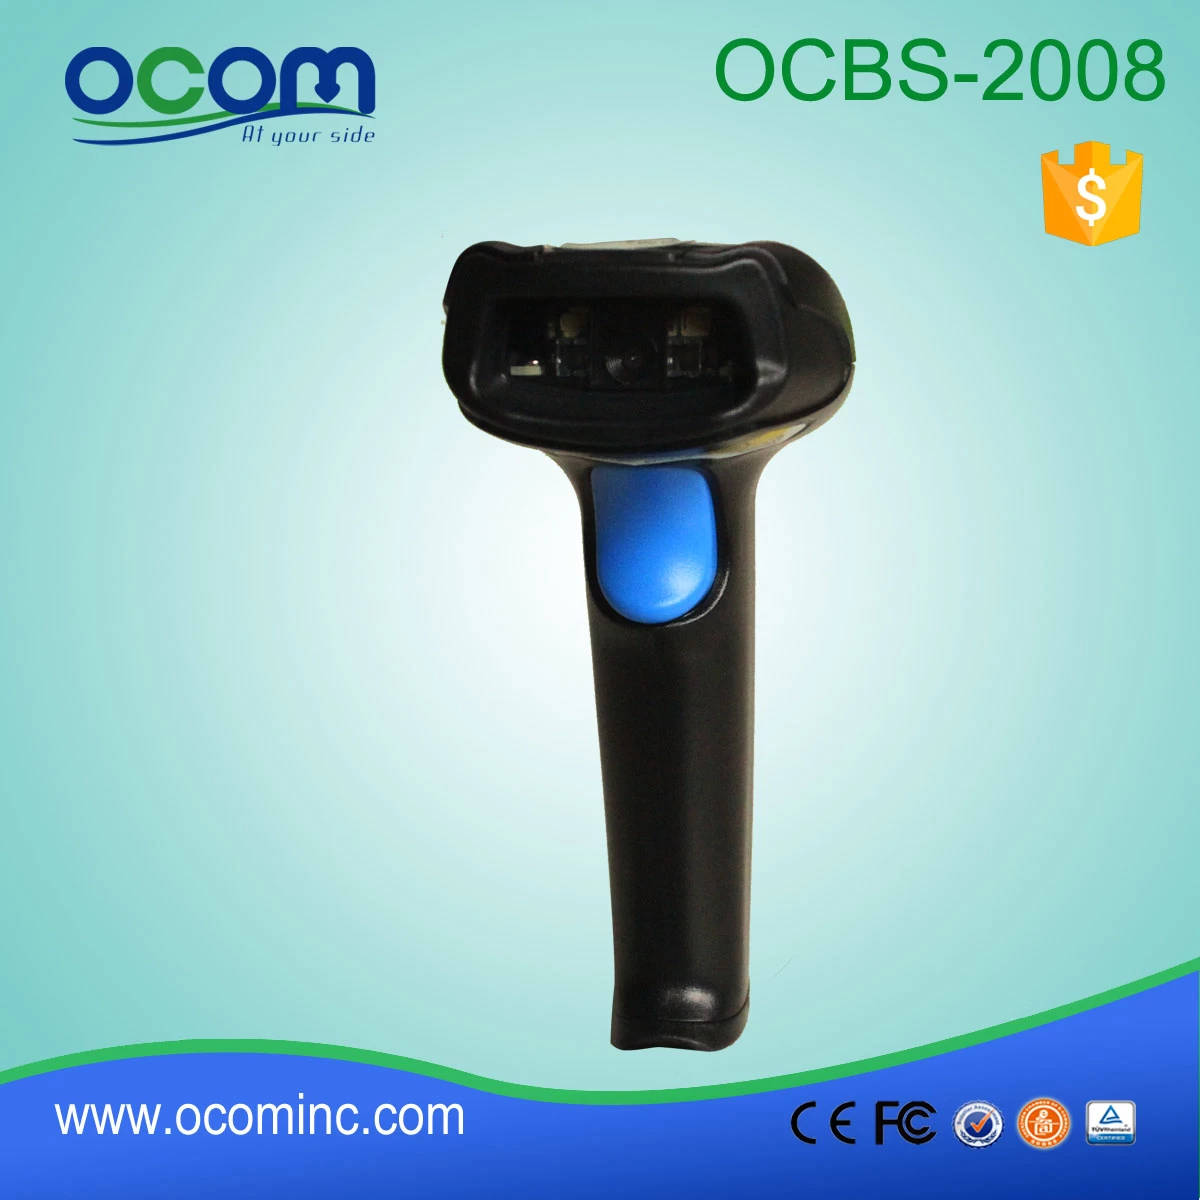 1D/2D Image Barcode Scanner (OCBS-2008)